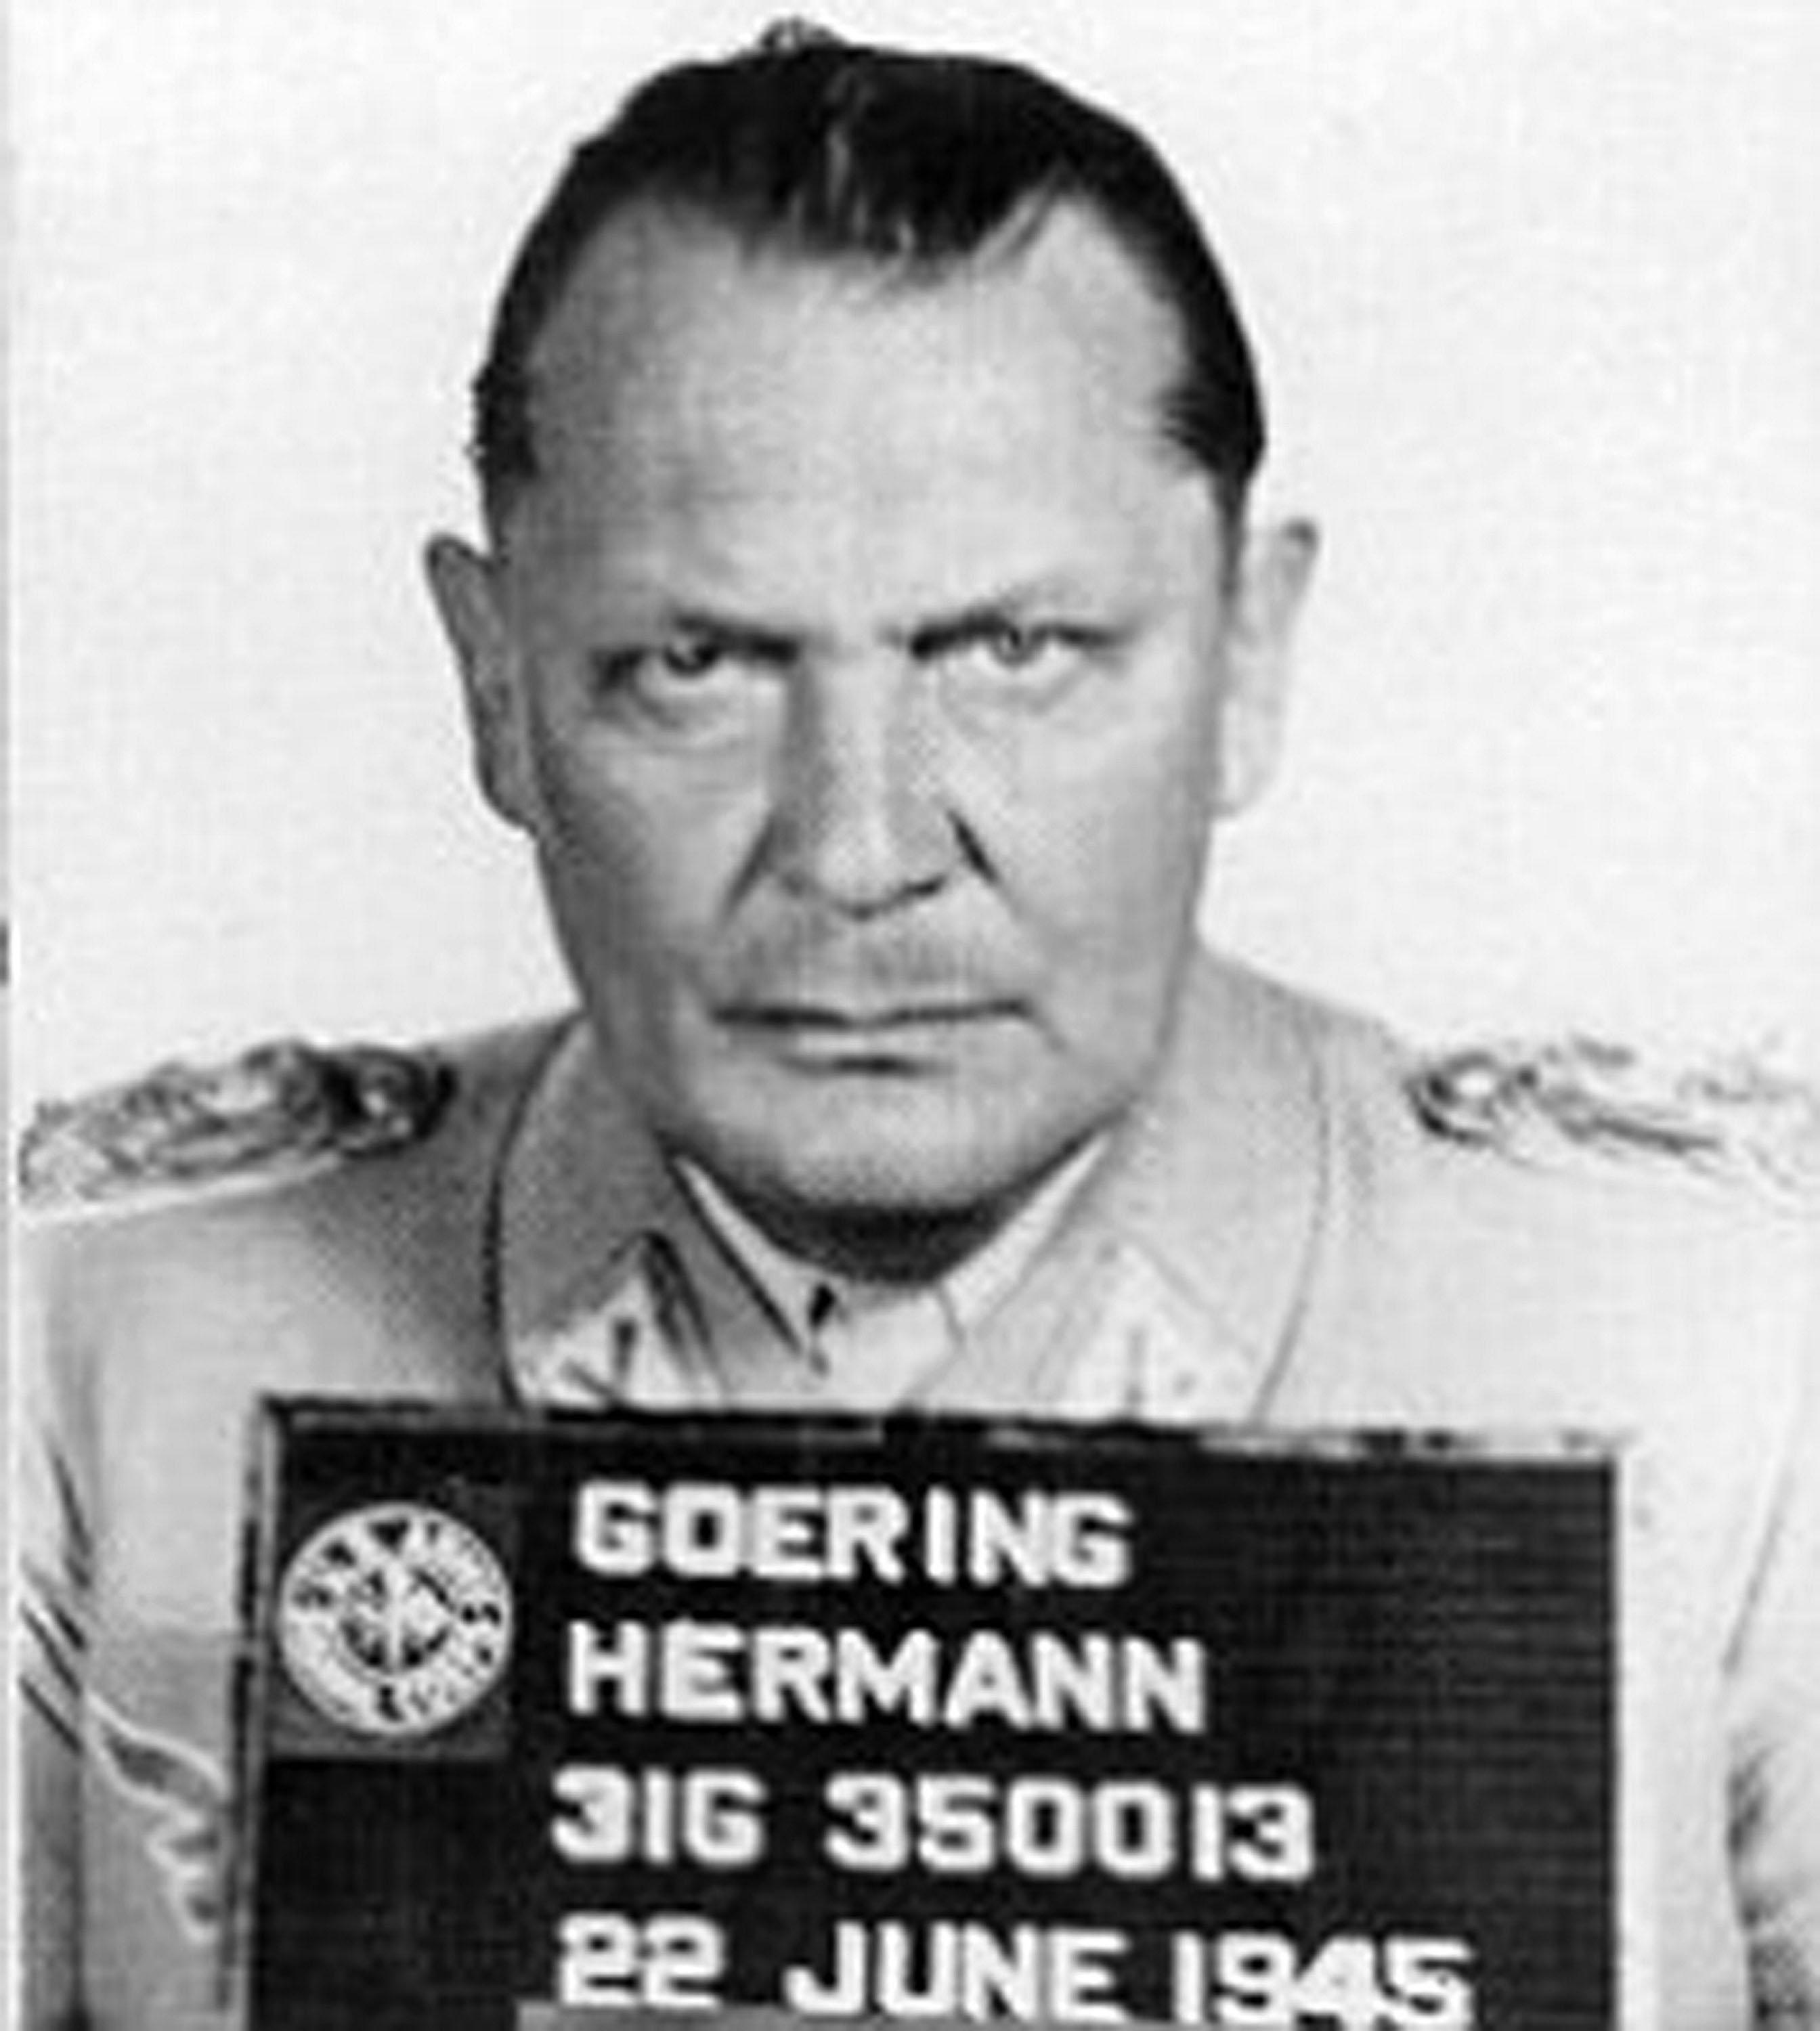 Fahndungsfoto des führenden Nazis Hermann Göring, der im Mai 1945 von den Alliierten verhaftet wurde